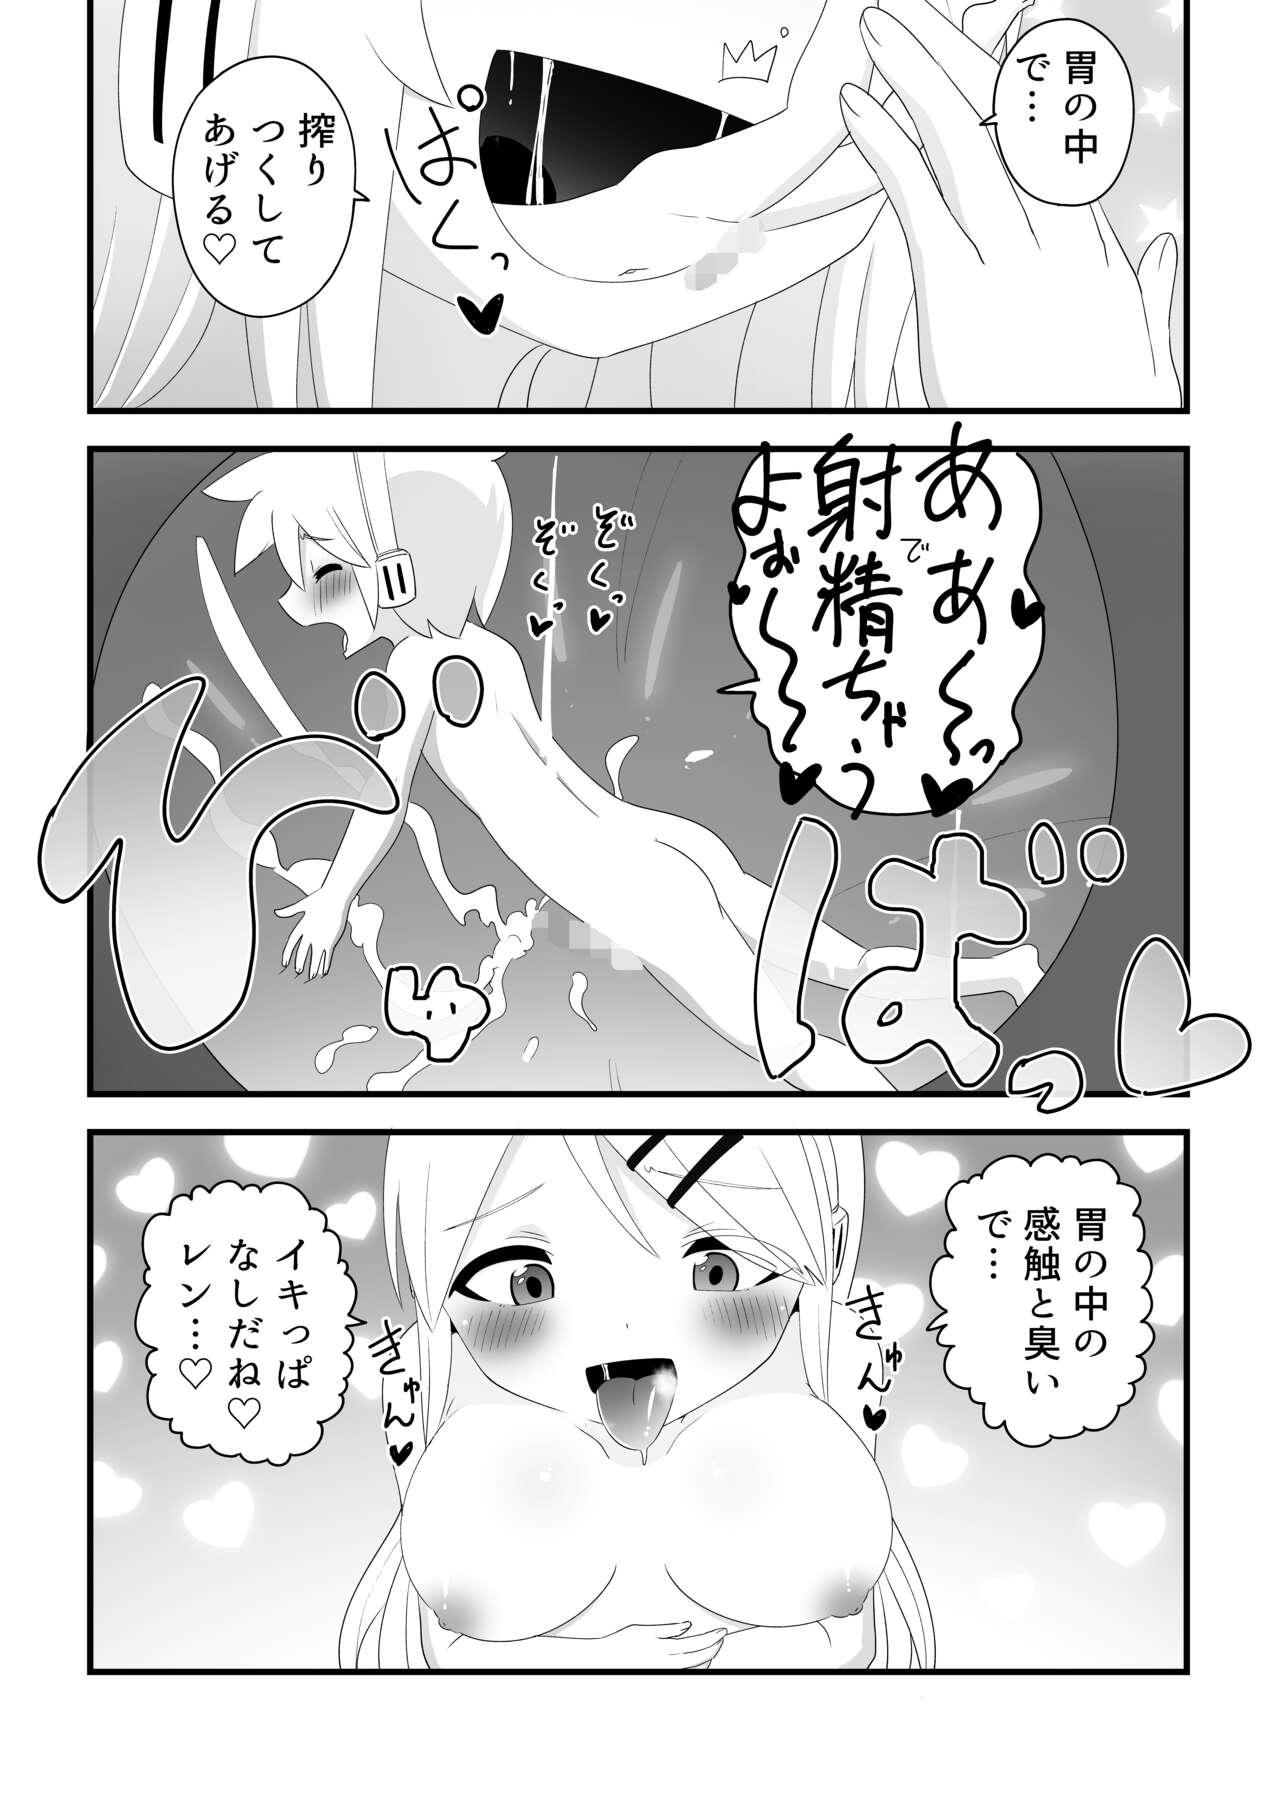 Men Karada kakusa rin ga ren o perorero shite marunomi shi chau manga - Vocaloid Transexual - Page 4